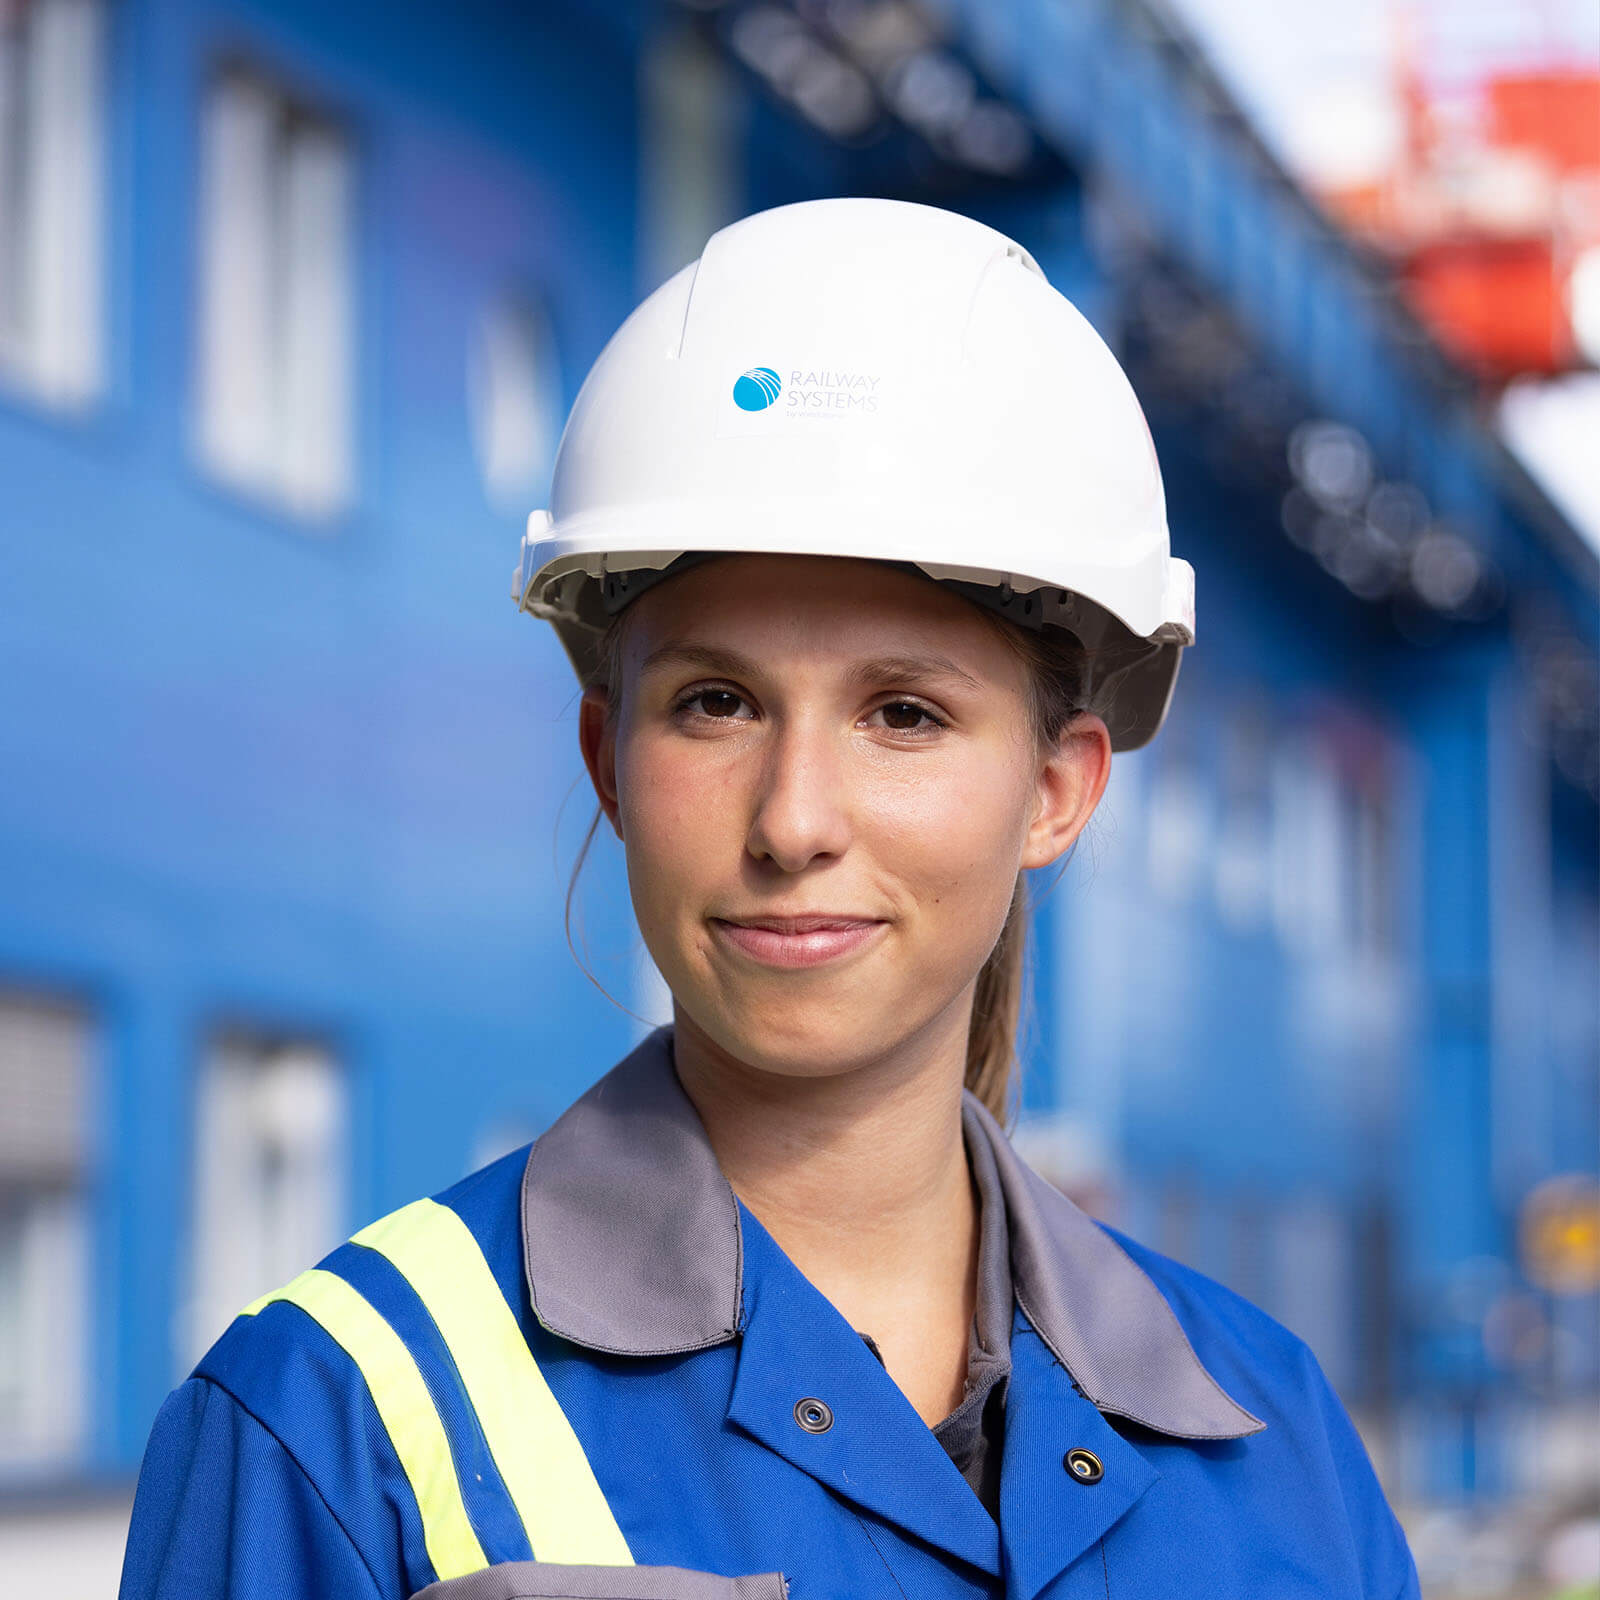 voestalpine Mitarbeiterin Lisa blickt mit einen weißen Schutzhelm und blaue Arbeitsbekleidung in die Kamera, im Hintergrund kann man Industriegebiet erkennen.